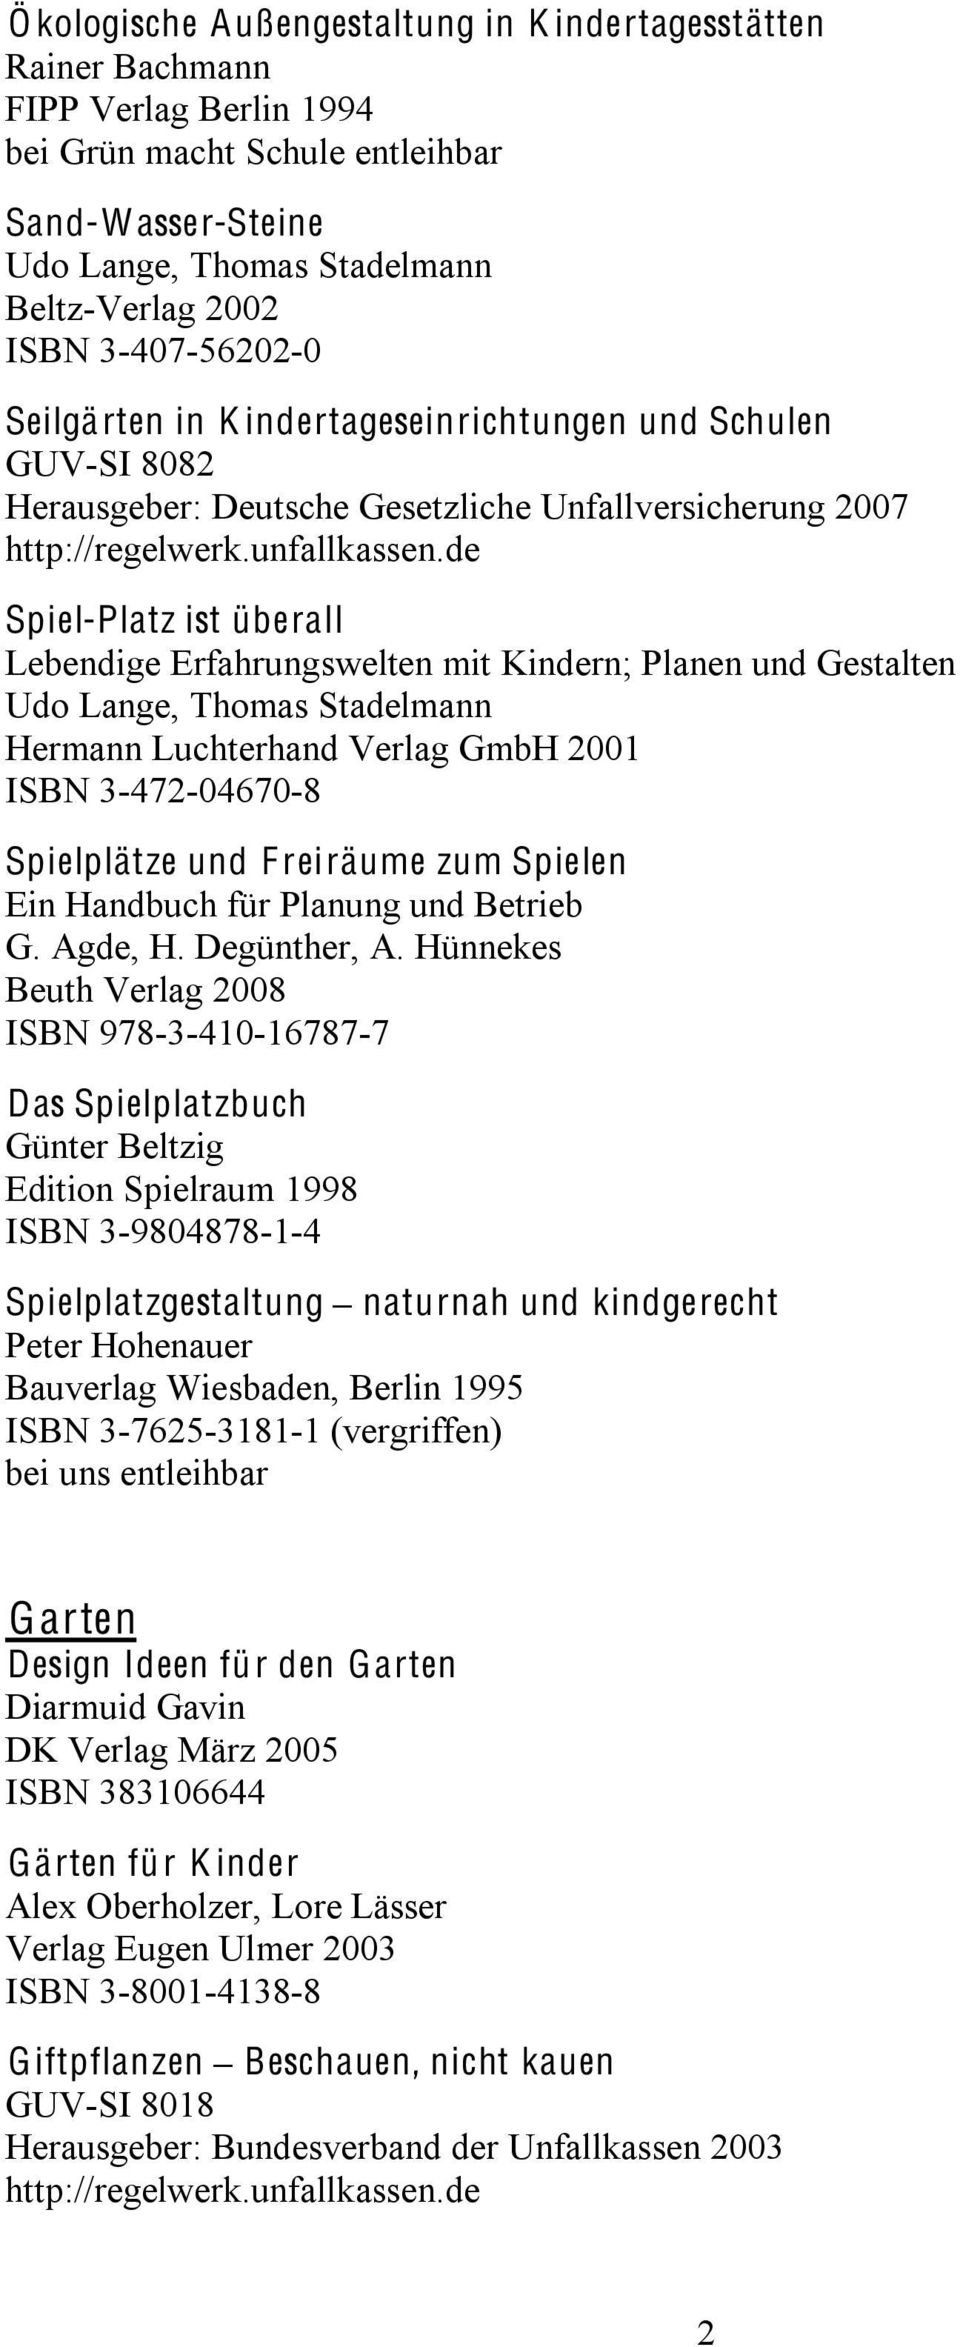 Planen und Gestalten Udo Lange, Thomas Stadelmann Hermann Luchterhand Verlag GmbH 2001 ISBN 3-472-04670-8 Spielplätze und F reiräume zum Spielen Ein Handbuch für Planung und Betrieb G. Agde, H.